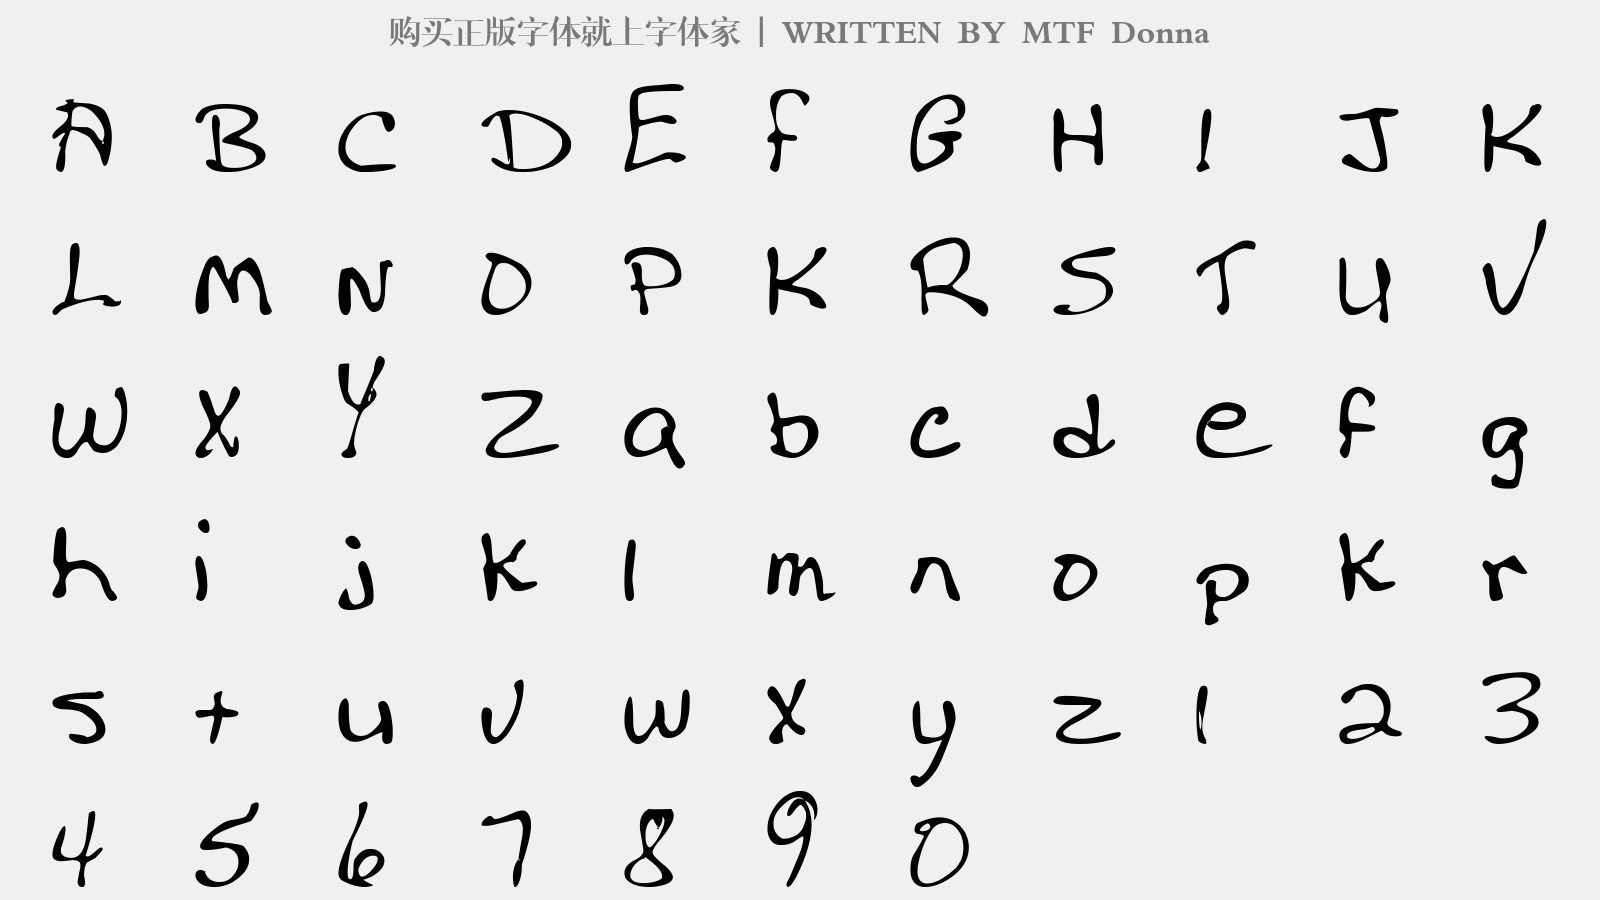 MTF Donna - 大写字母/小写字母/数字